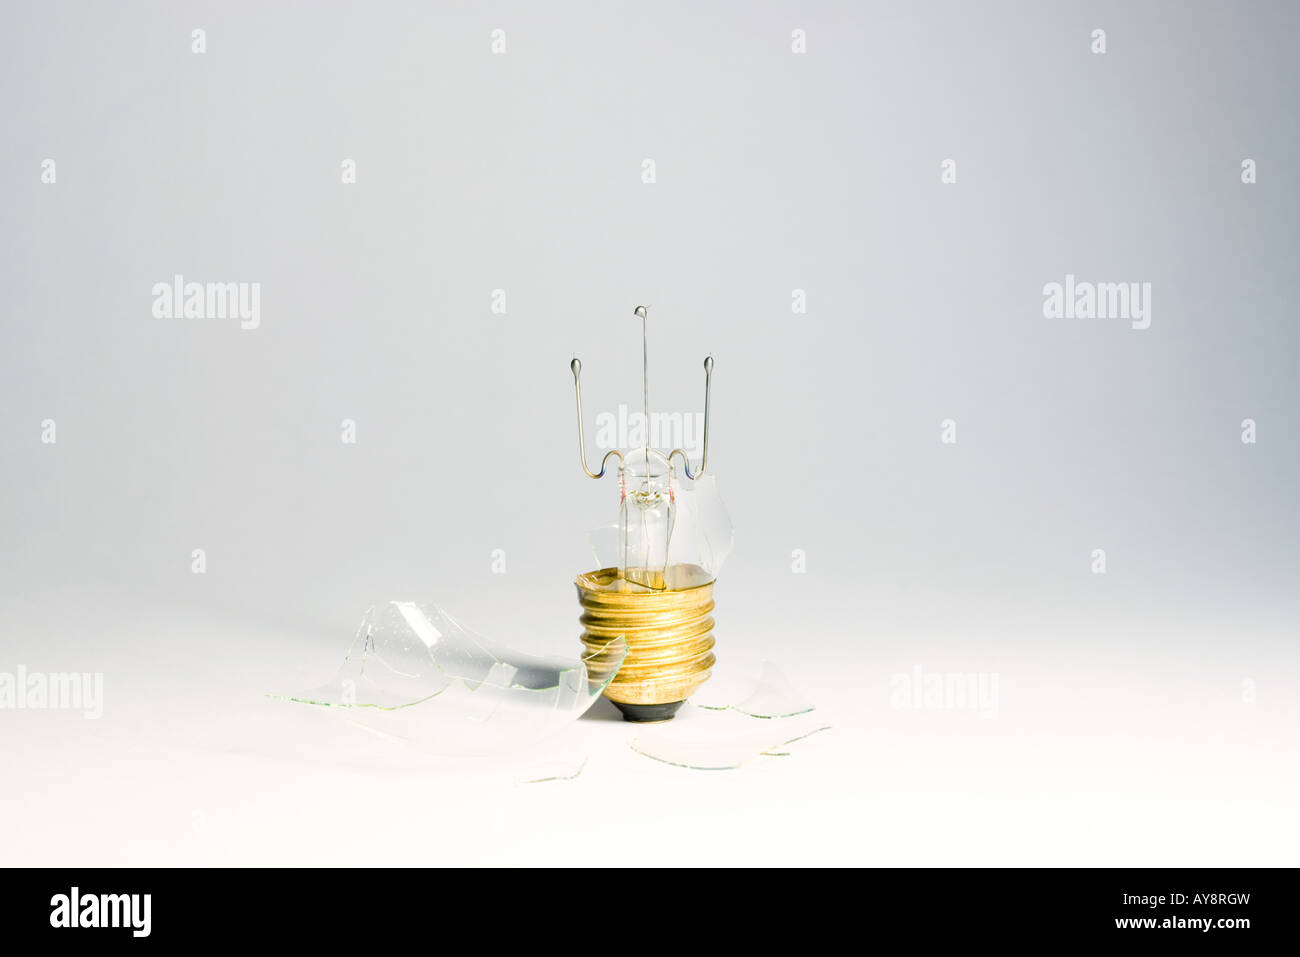 Ampoule cassée, close-up Banque D'Images